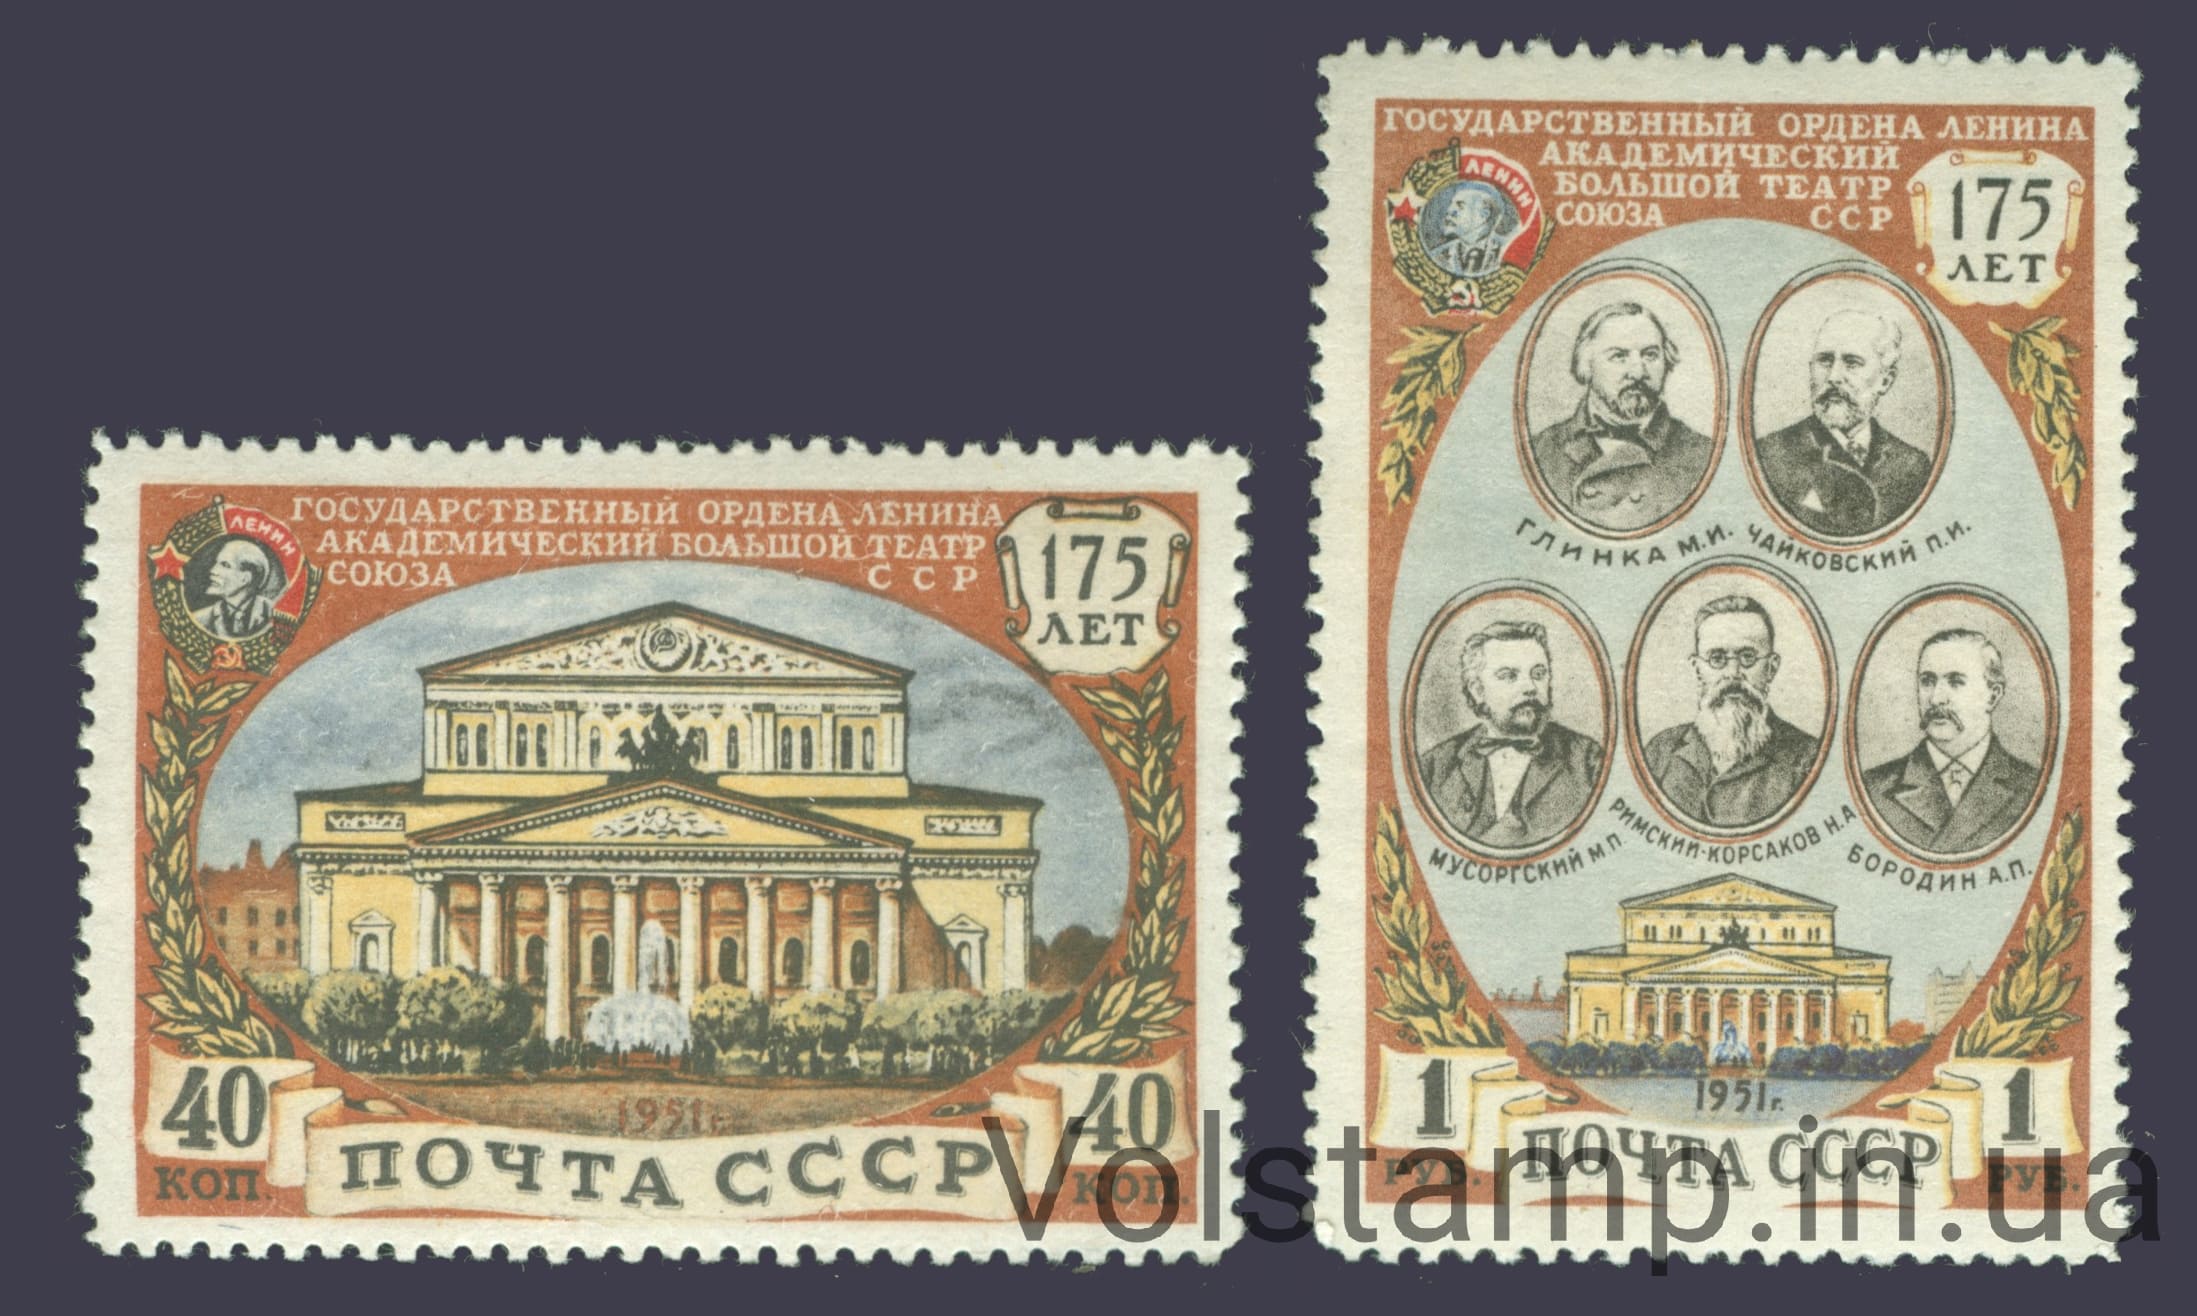 1951 серия марок 175-летие Государственного академического Большого театра - MNH №1525-1526